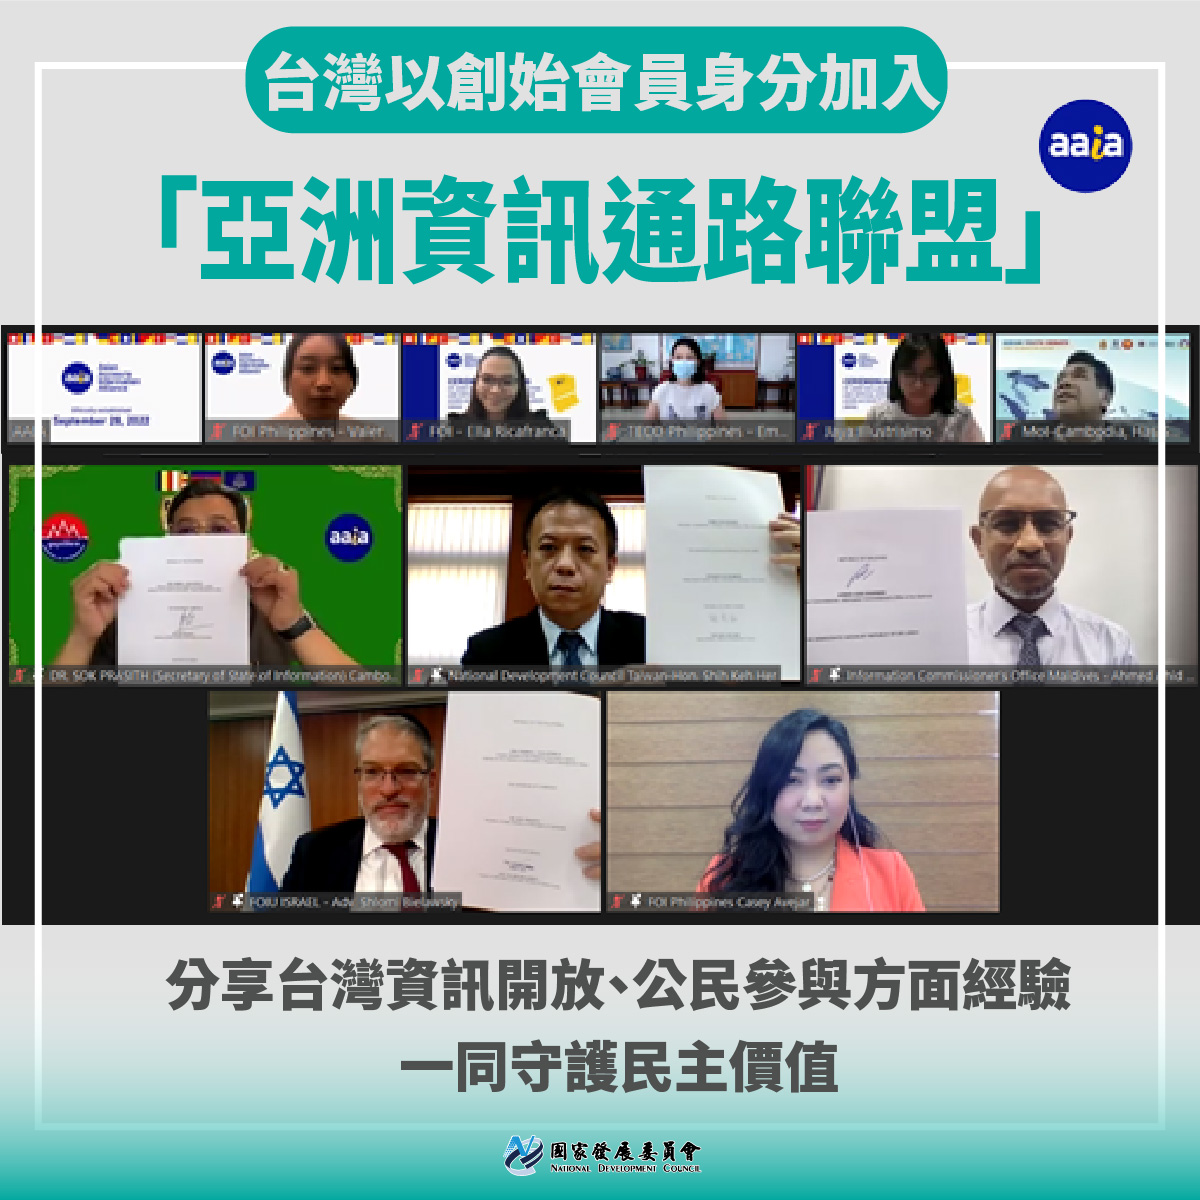 台灣在國際參與又有新里程碑 以創始會員身分加入亞洲資訊通路聯盟(AAIA)